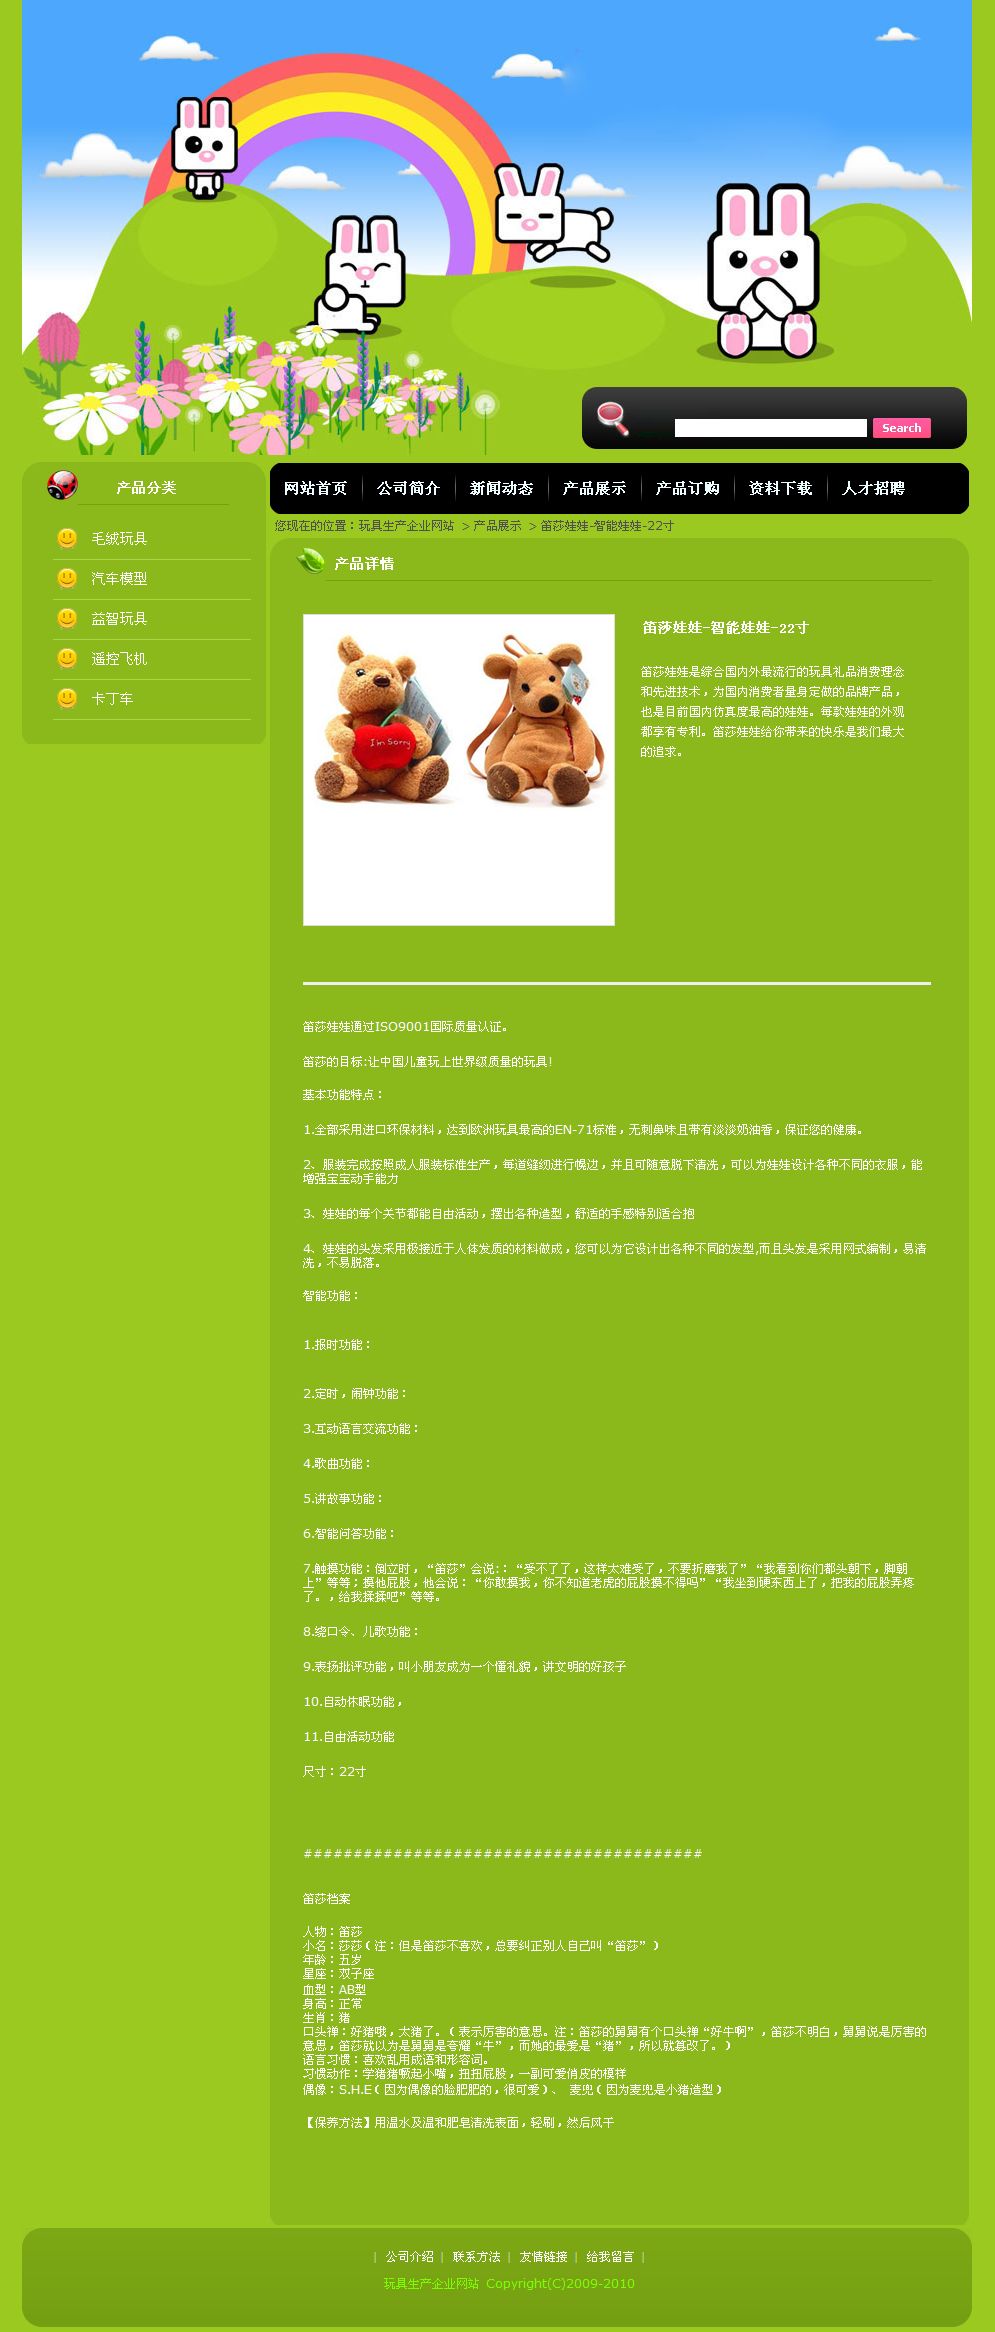 玩具生产企业网站产品内容页